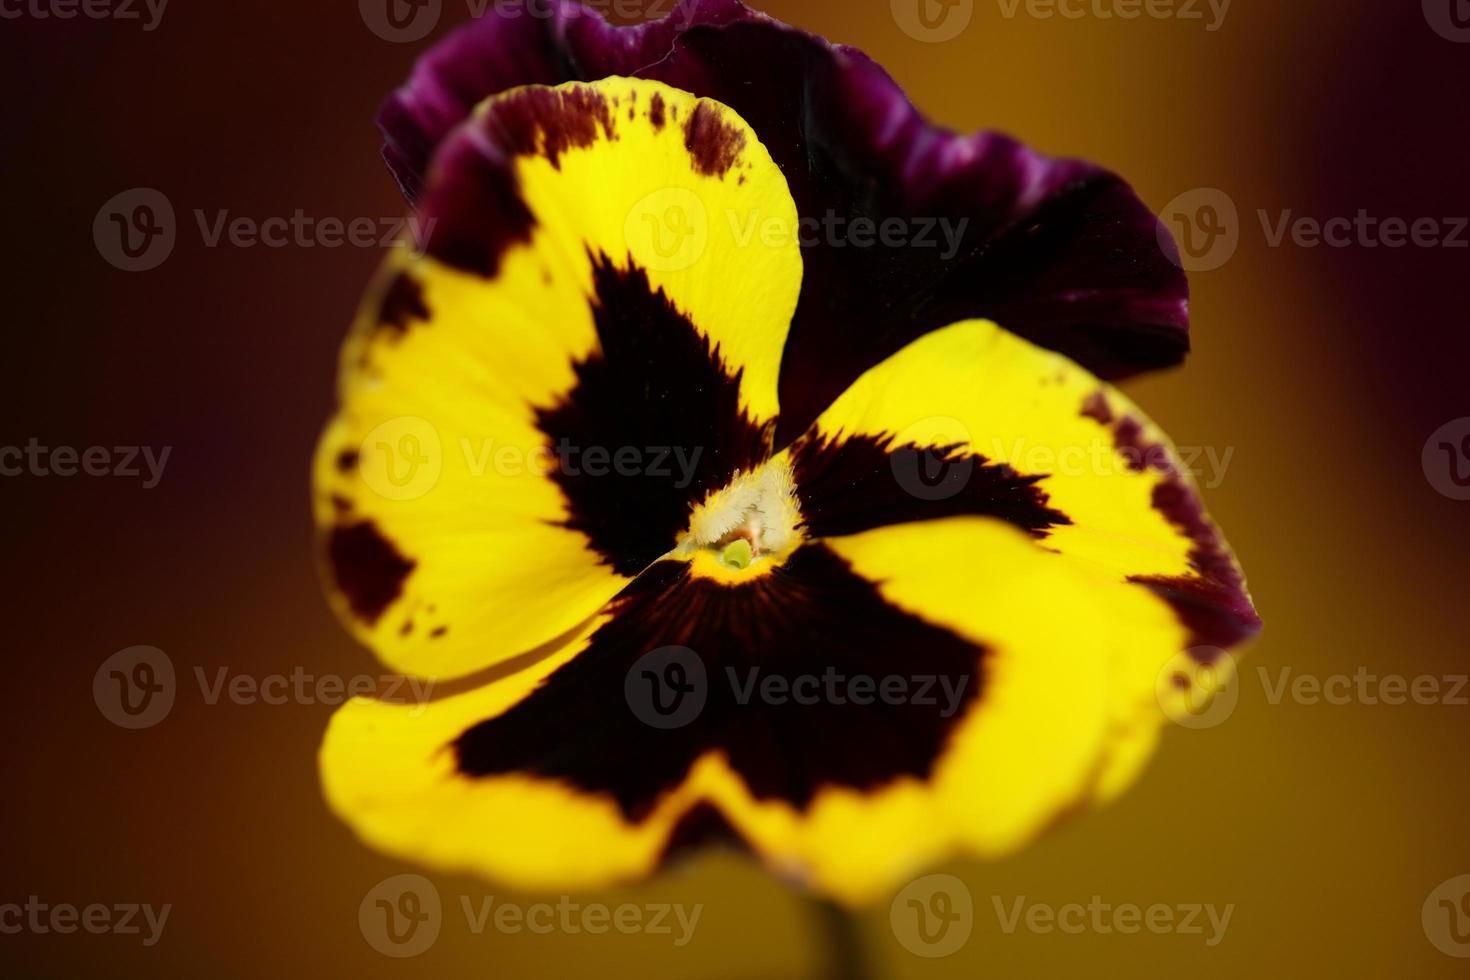 Viola flower blossom family violaceae close up botanical print photo